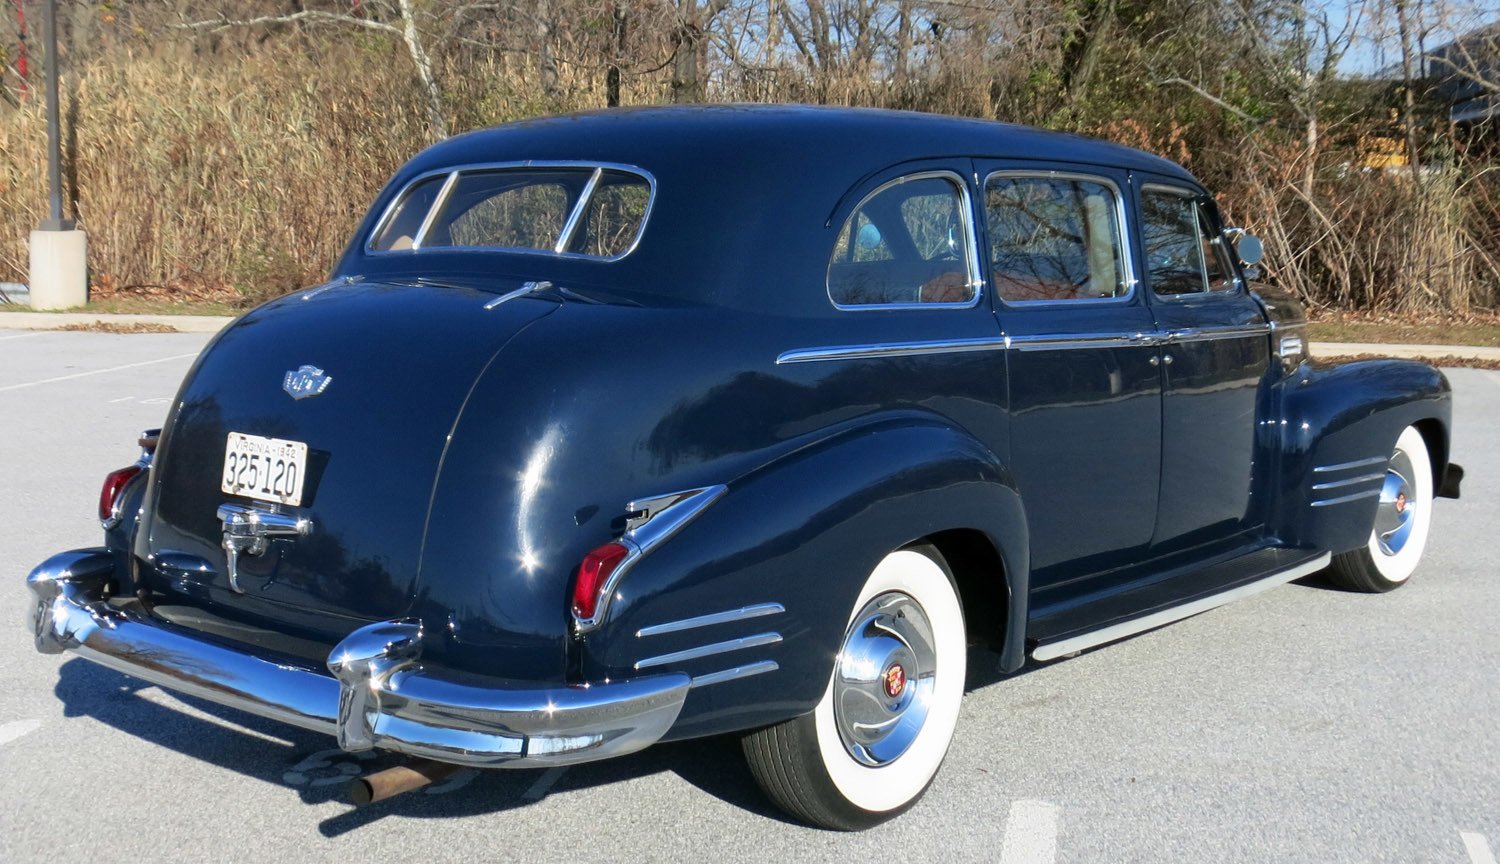 1942 Cadillac Fleetwood